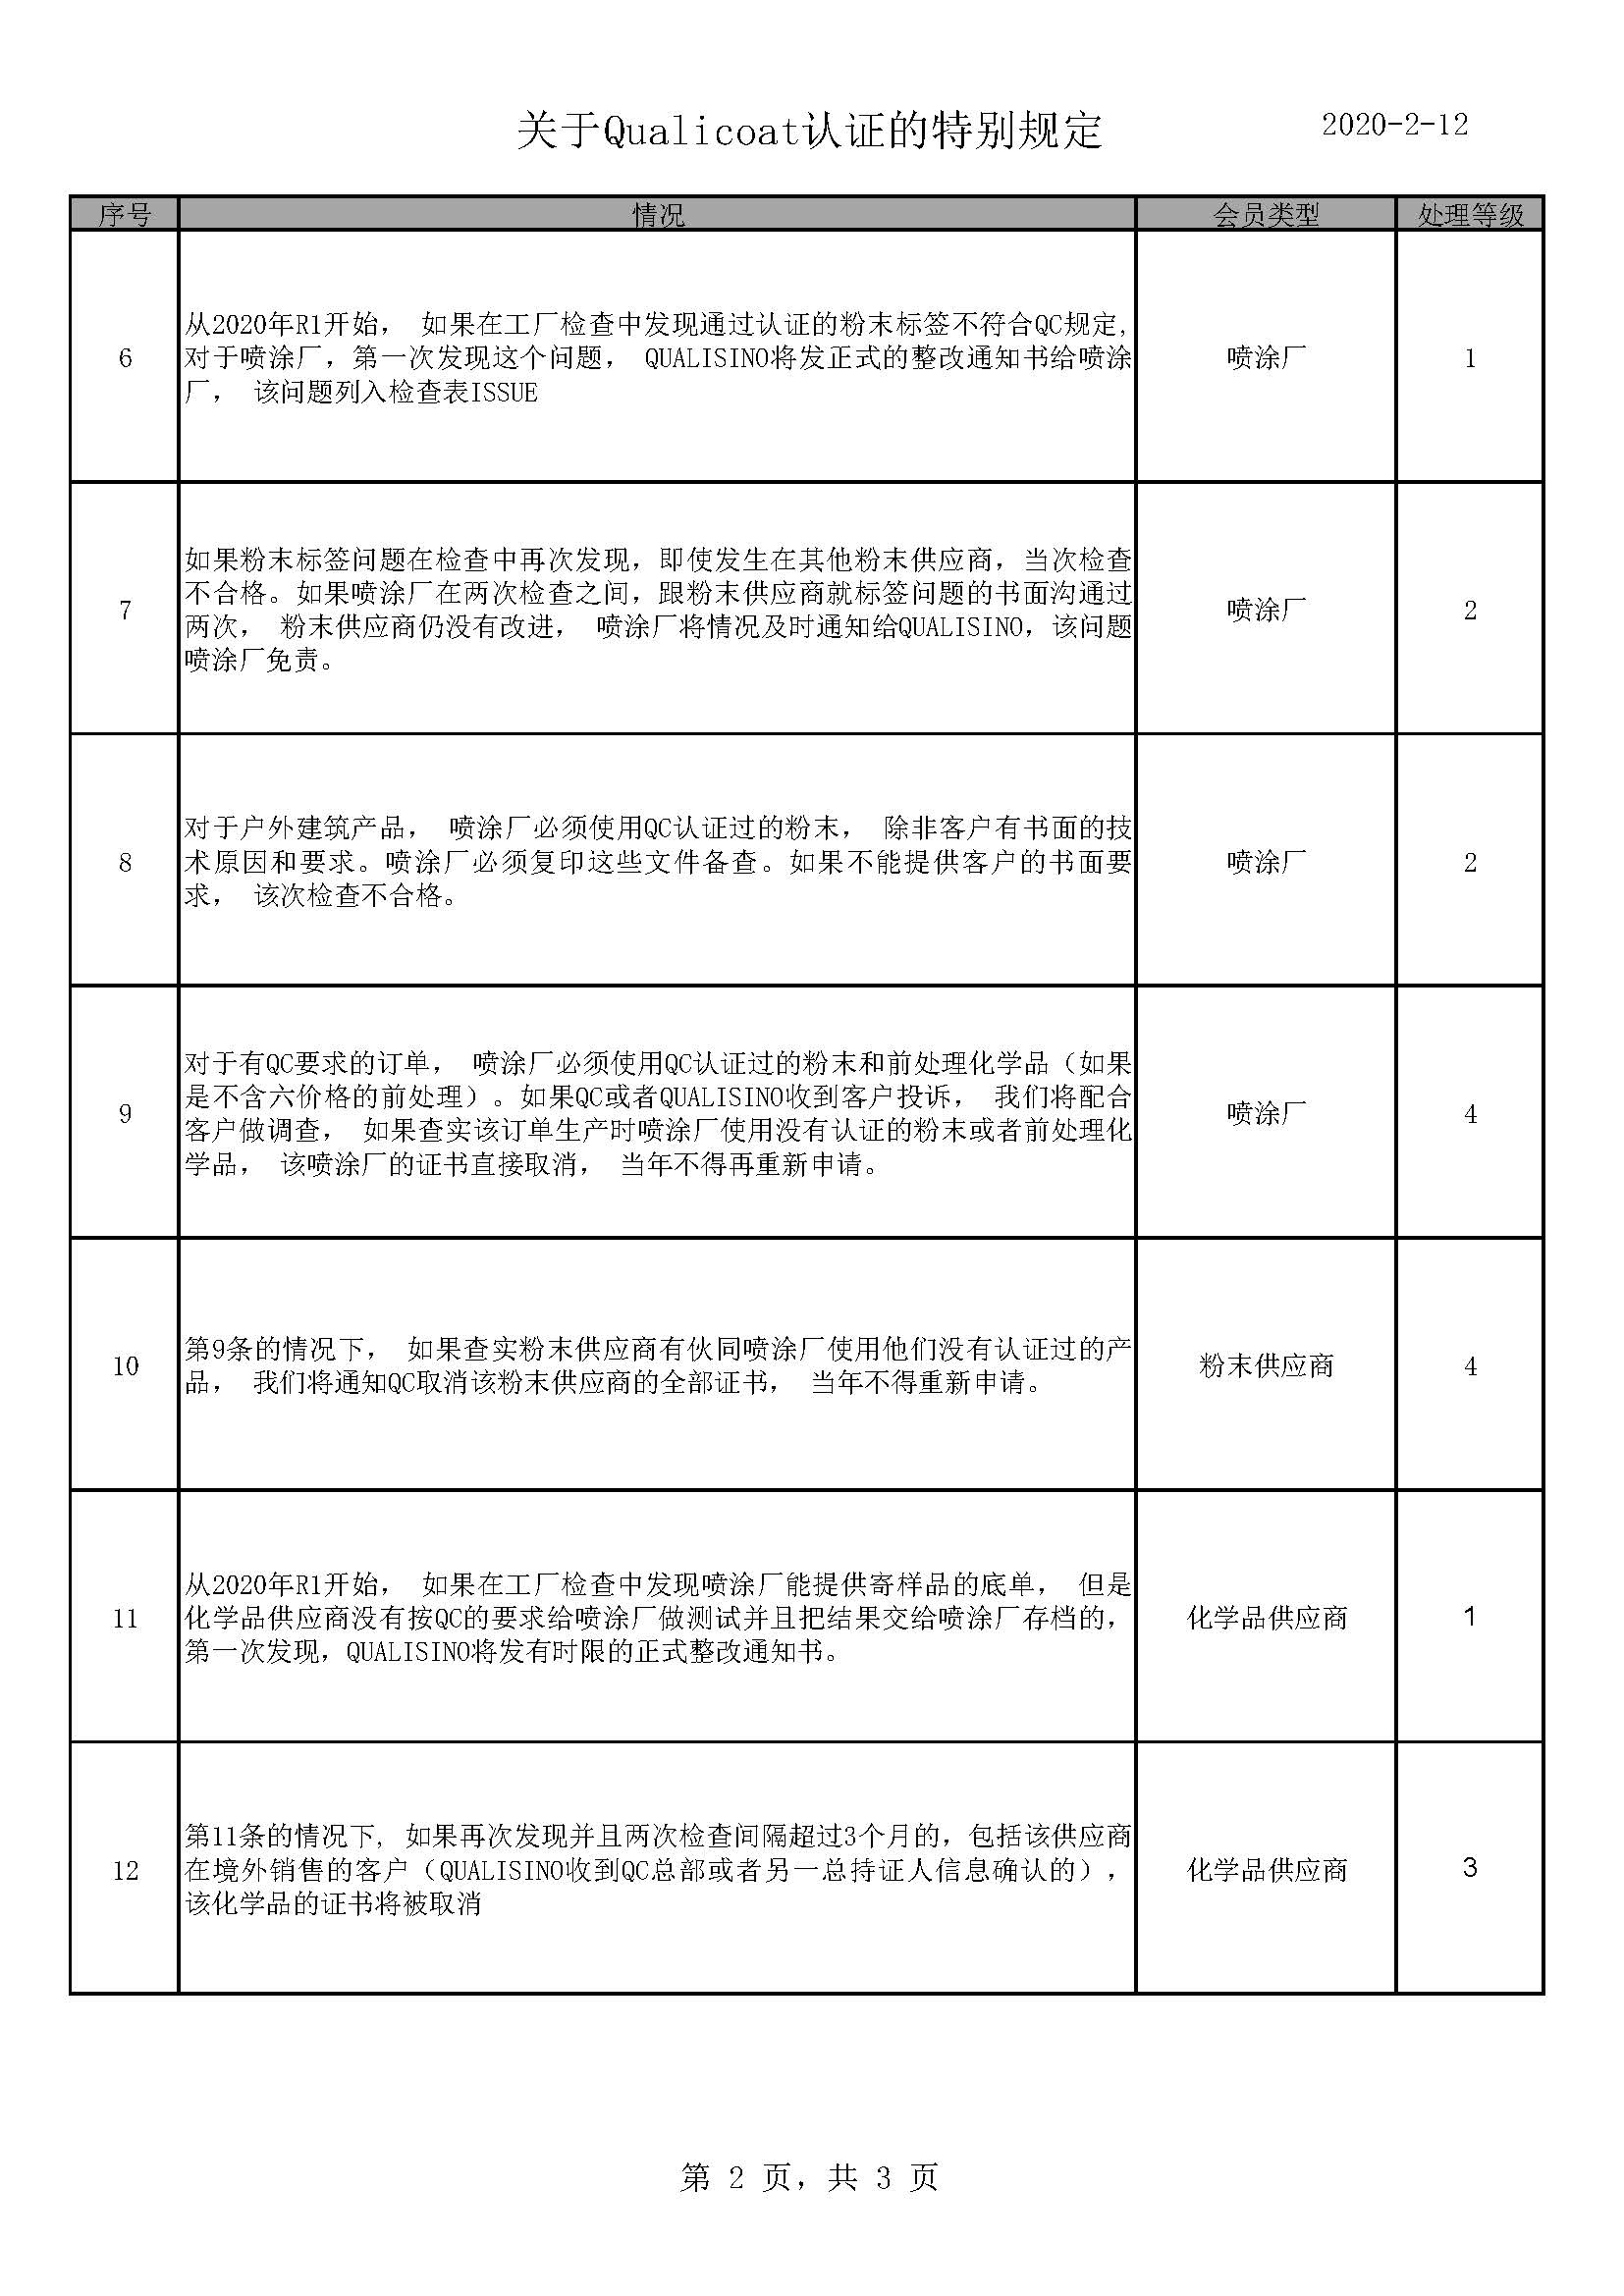 200212 本地规则 - 中文_页面_2.jpg